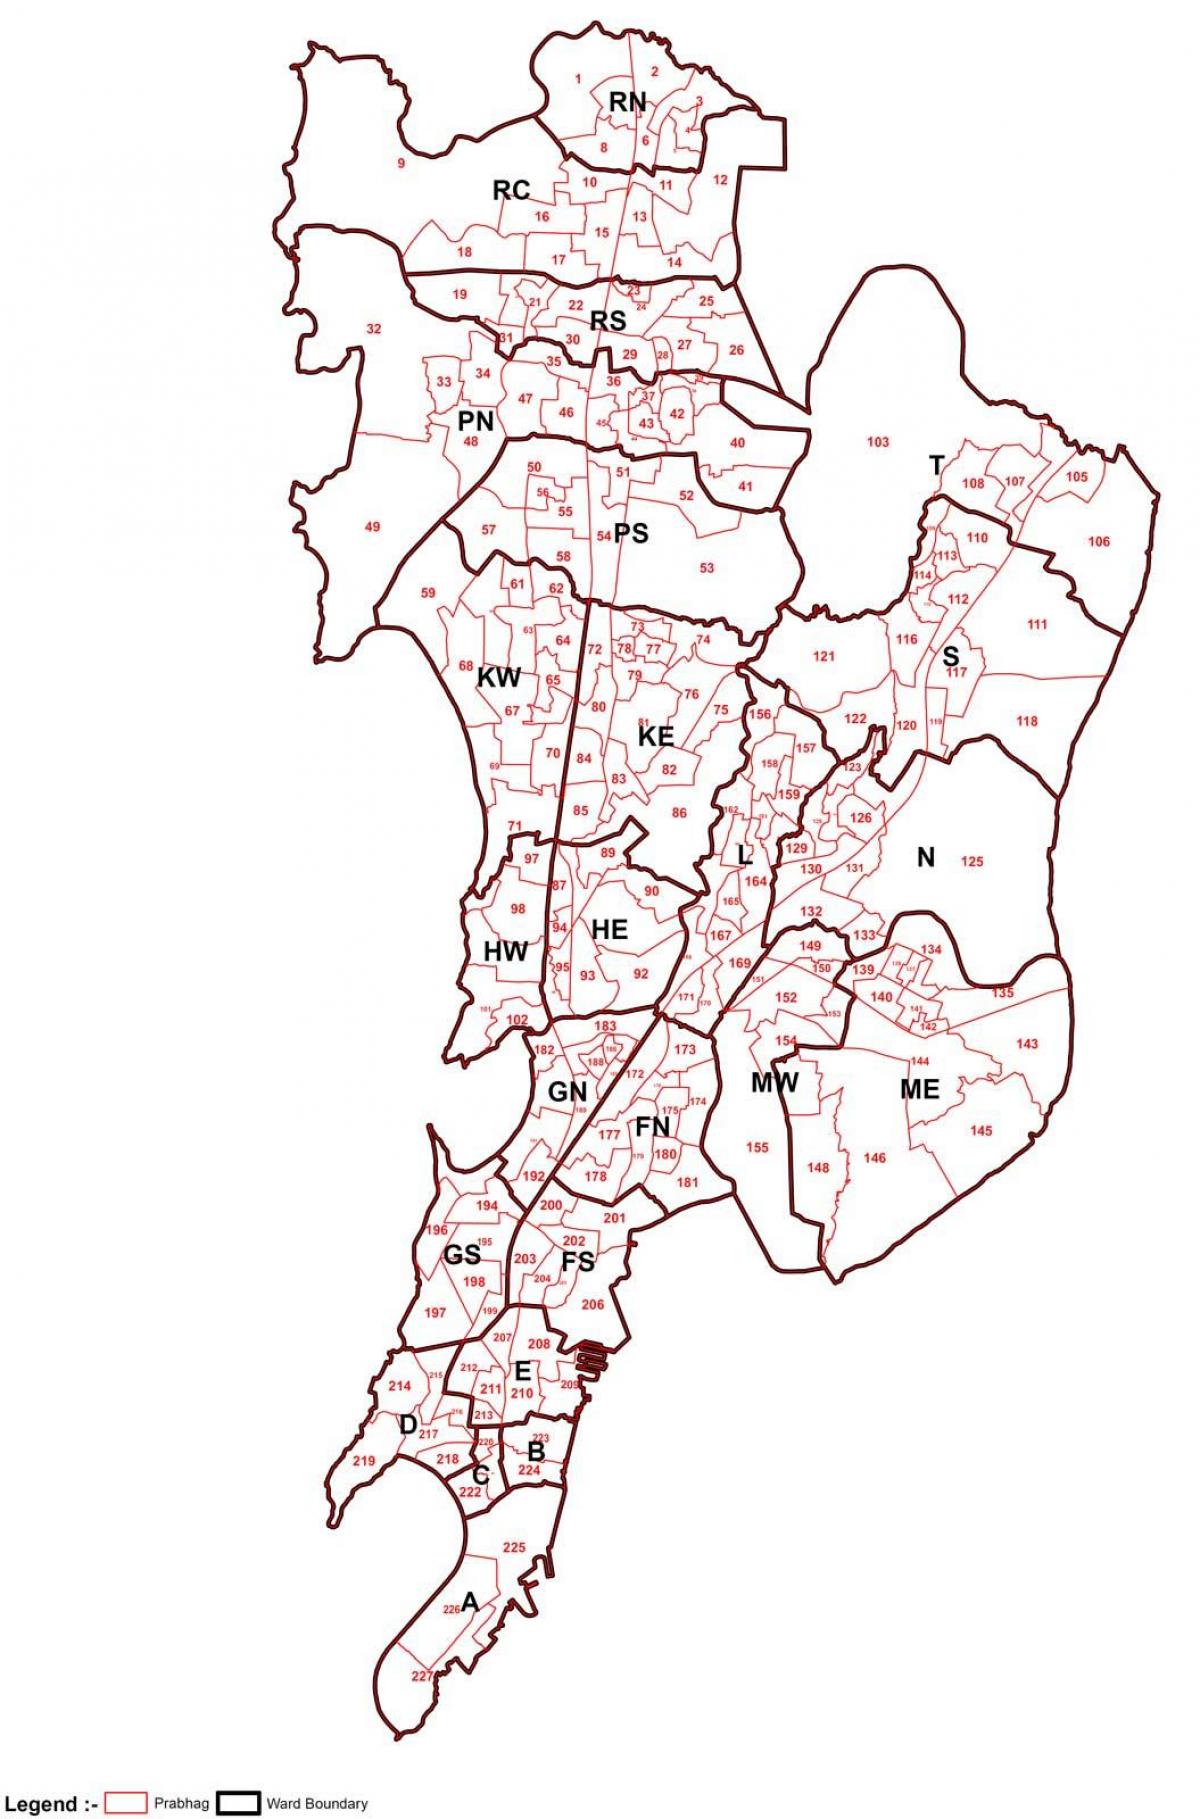 ward map of Mumbai